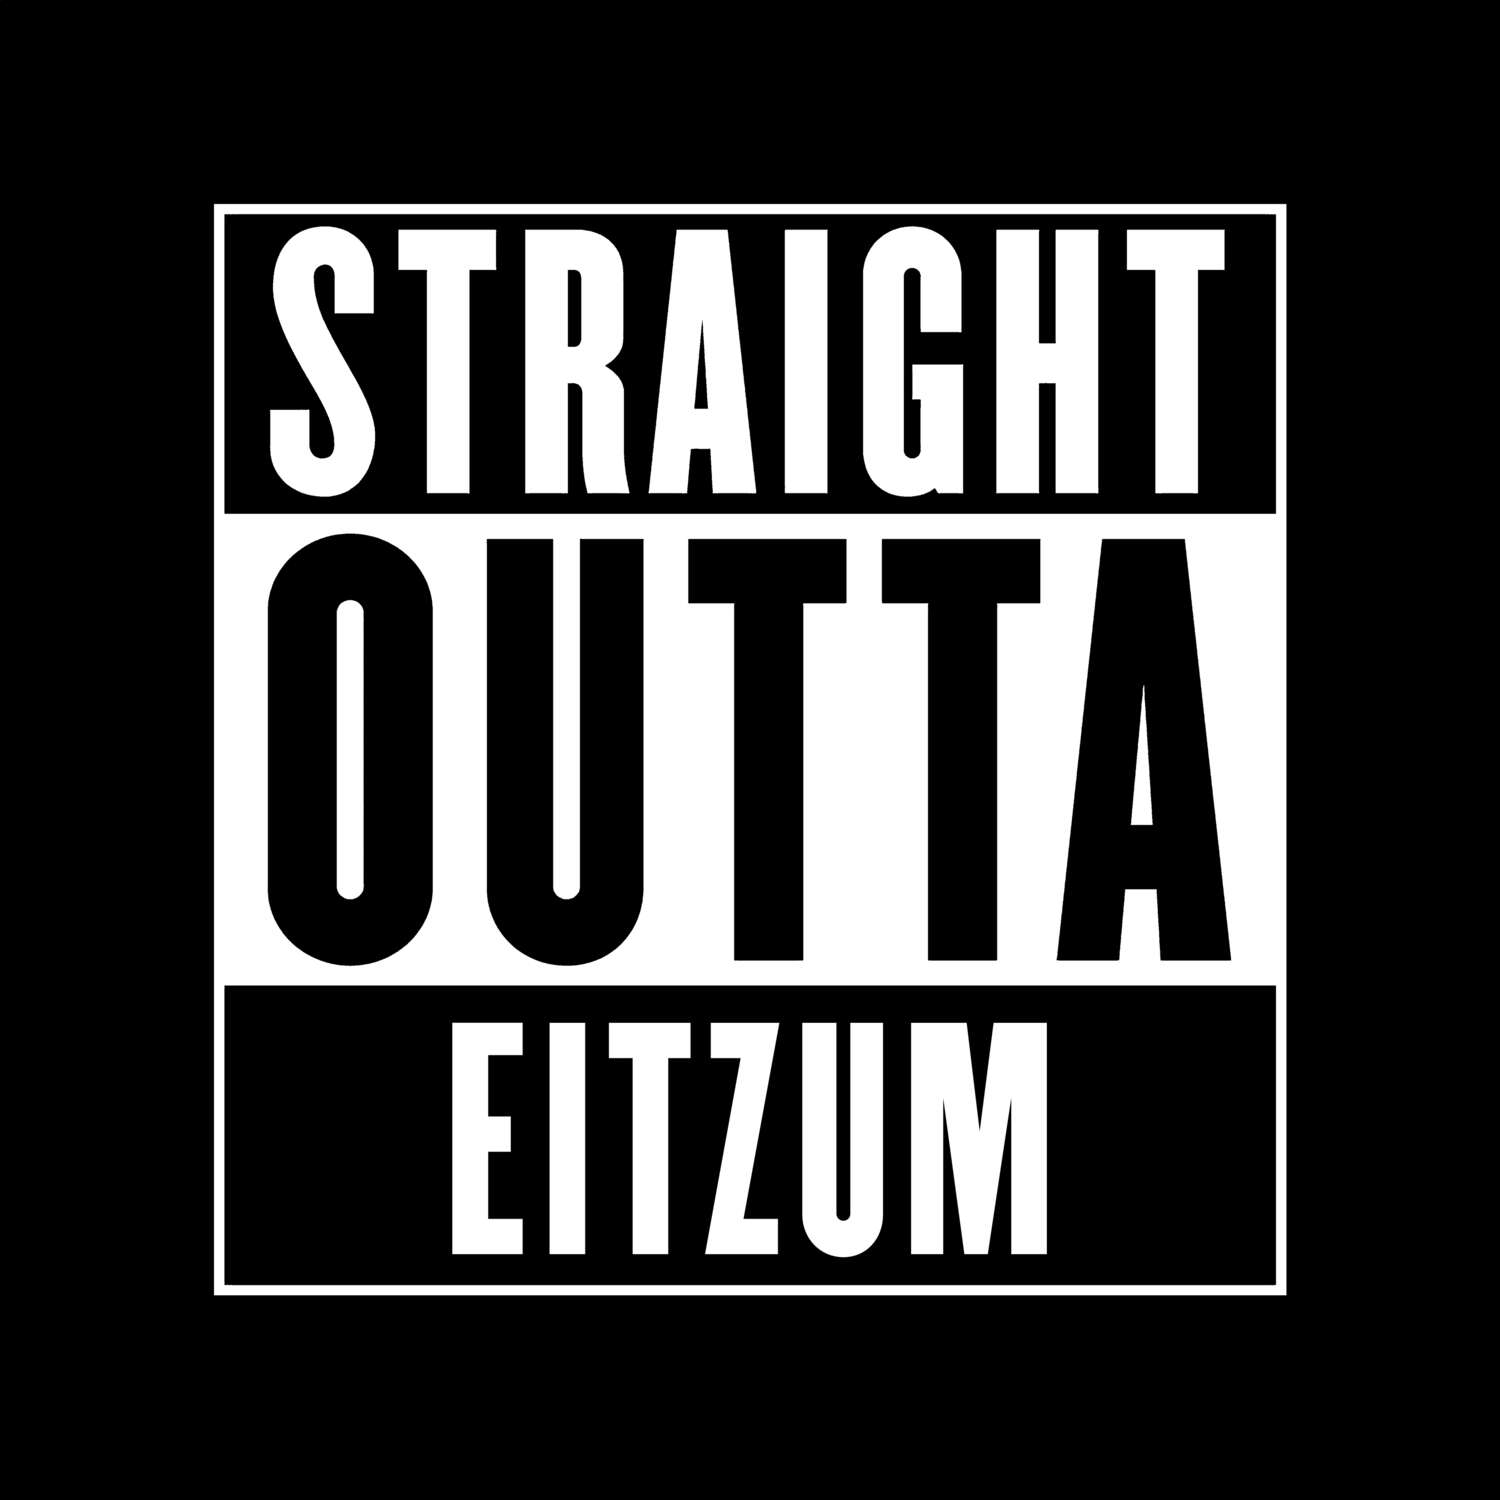 Eitzum T-Shirt »Straight Outta«